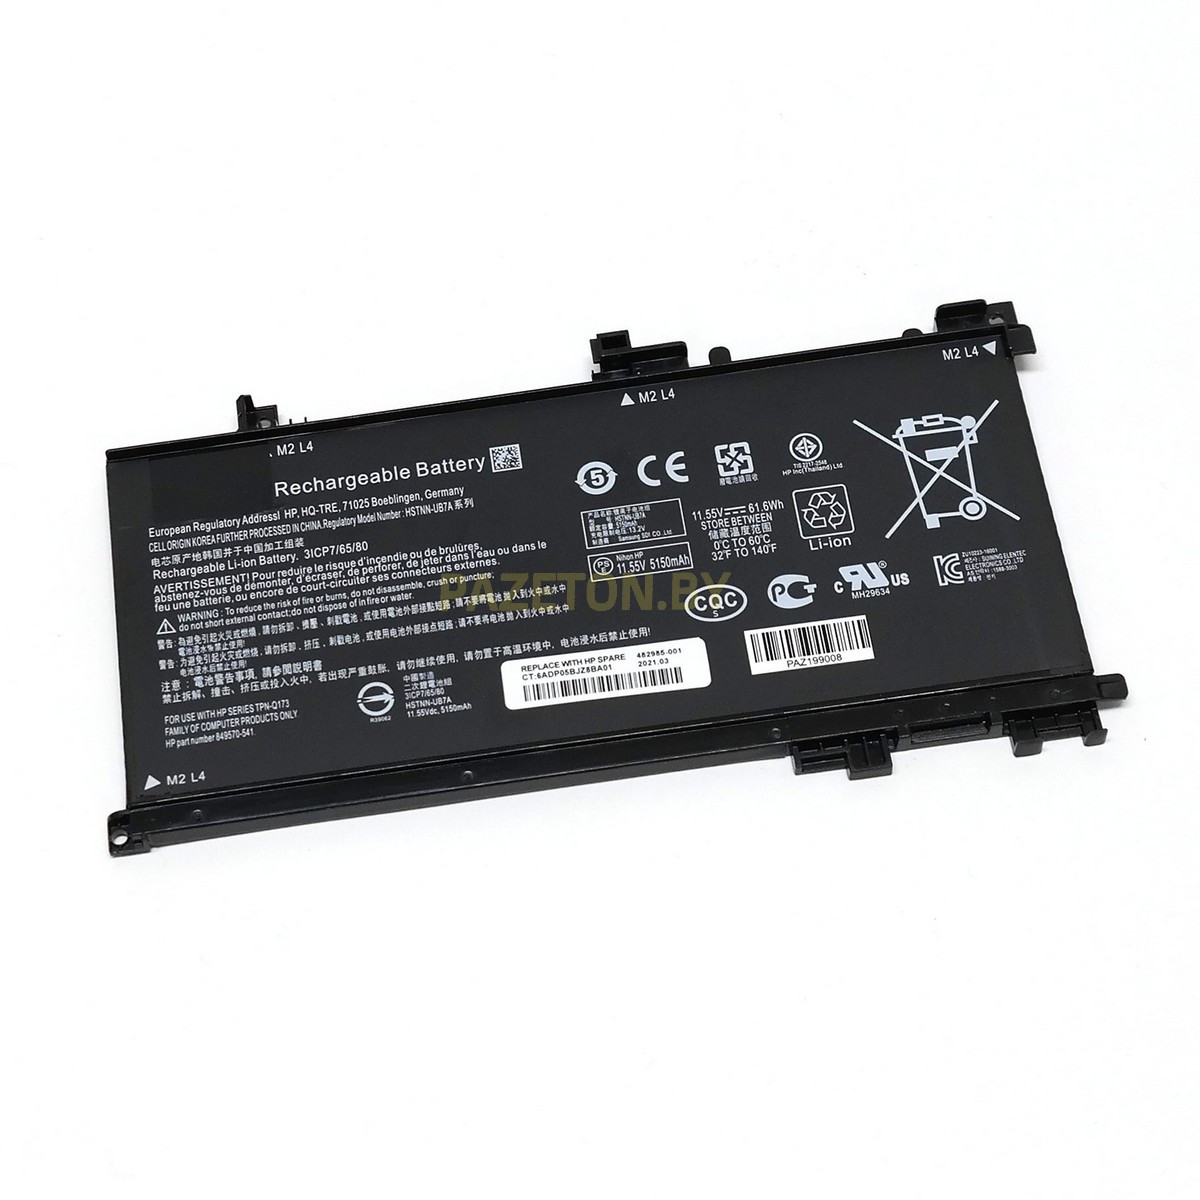 Батарея TE03XL для HP Omen 15-AX HP Pavilion 15-BC 11.55V 61.6Wh и других моделей ноутбуков, фото 1